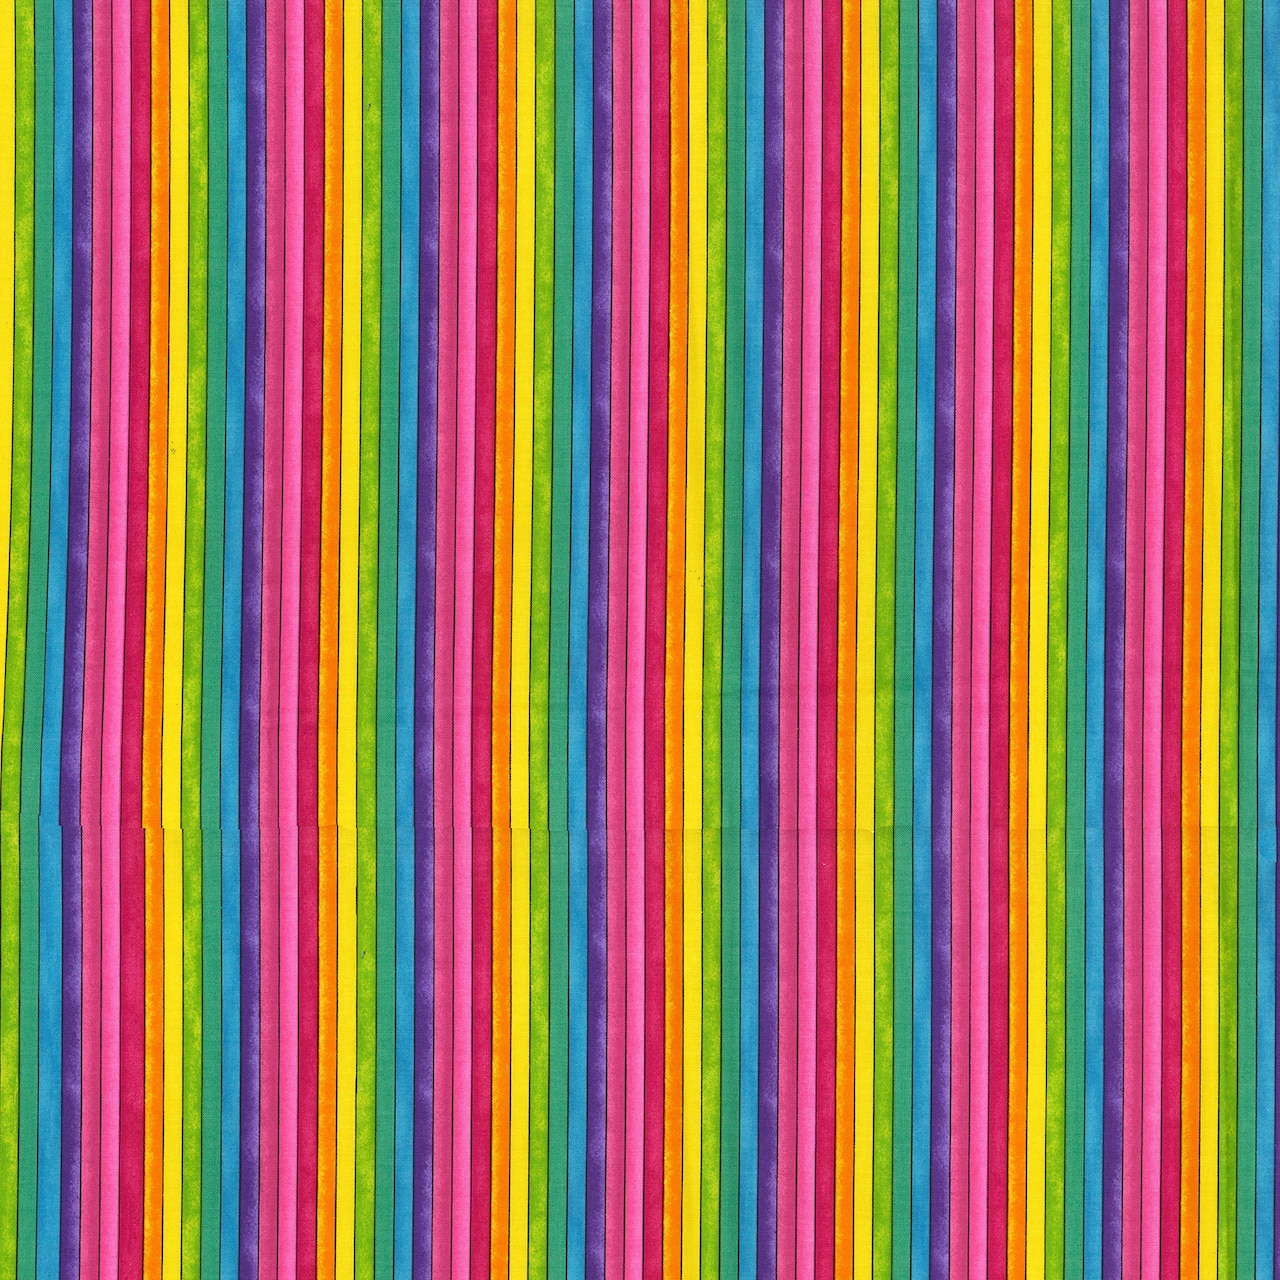 Fabric Traditions Multicolor Bright Stripes Cotton Fabric